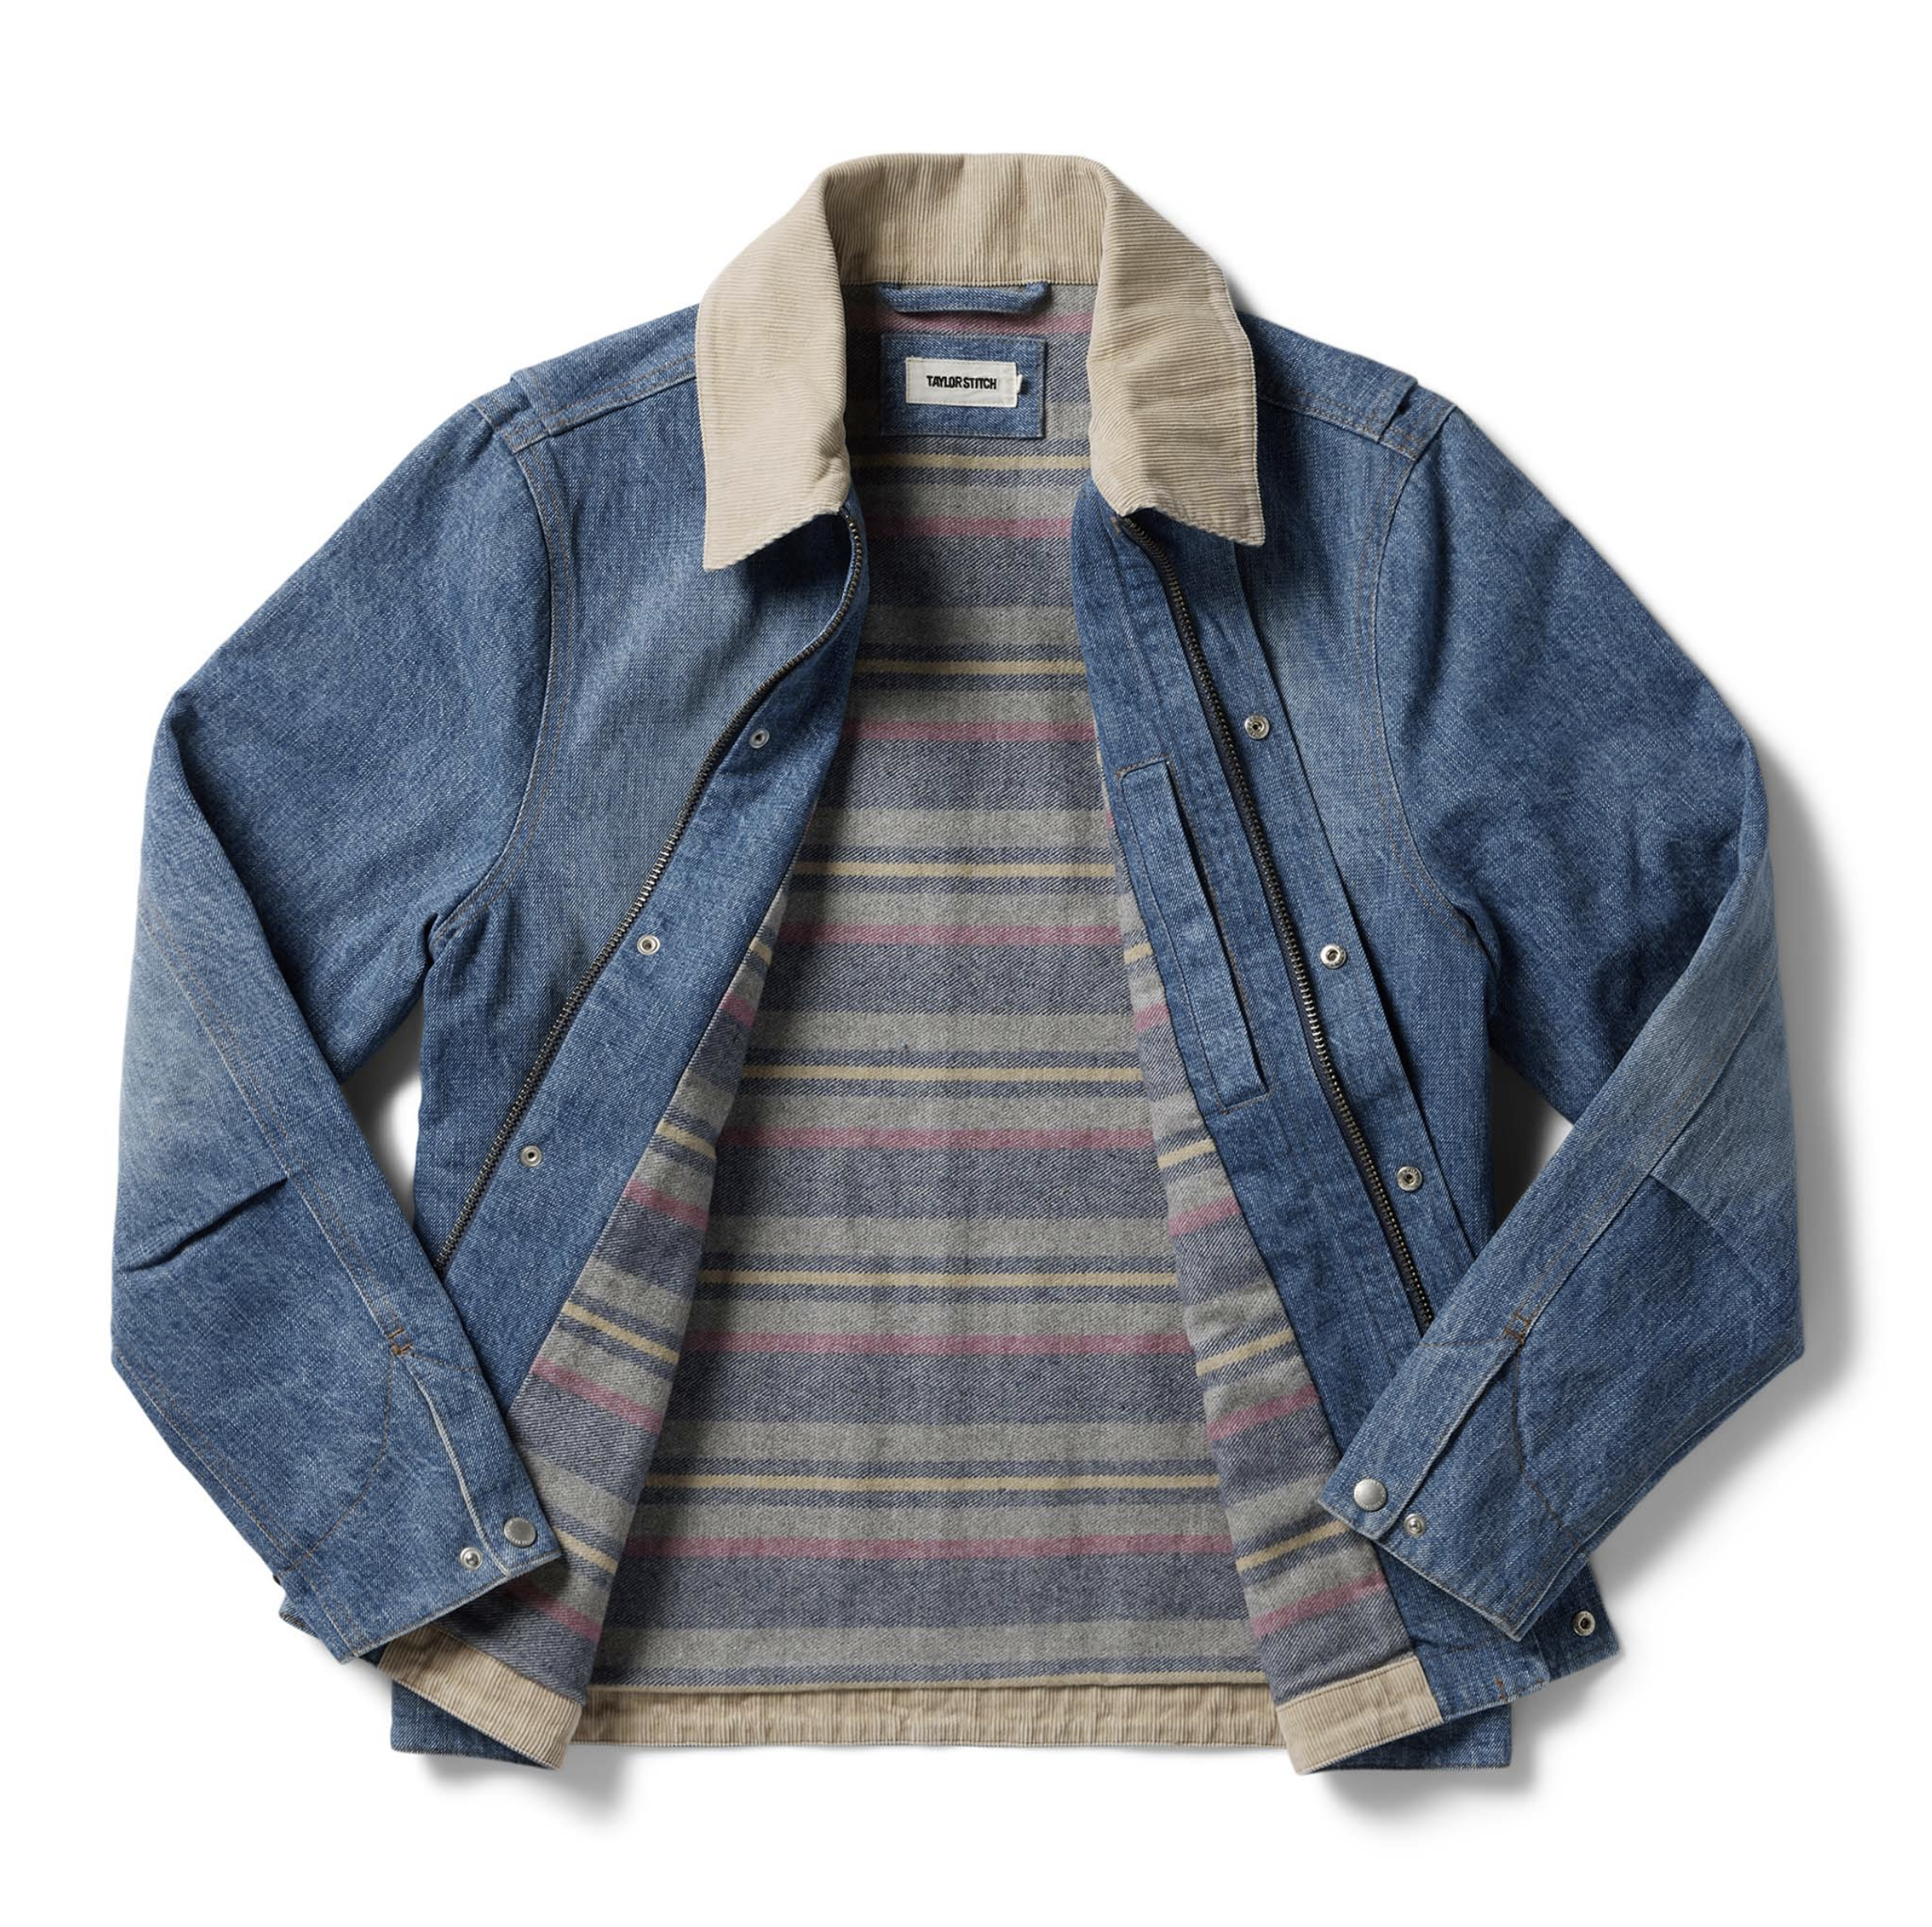 Monogram Workwear Denim Jacket - Ready-to-Wear